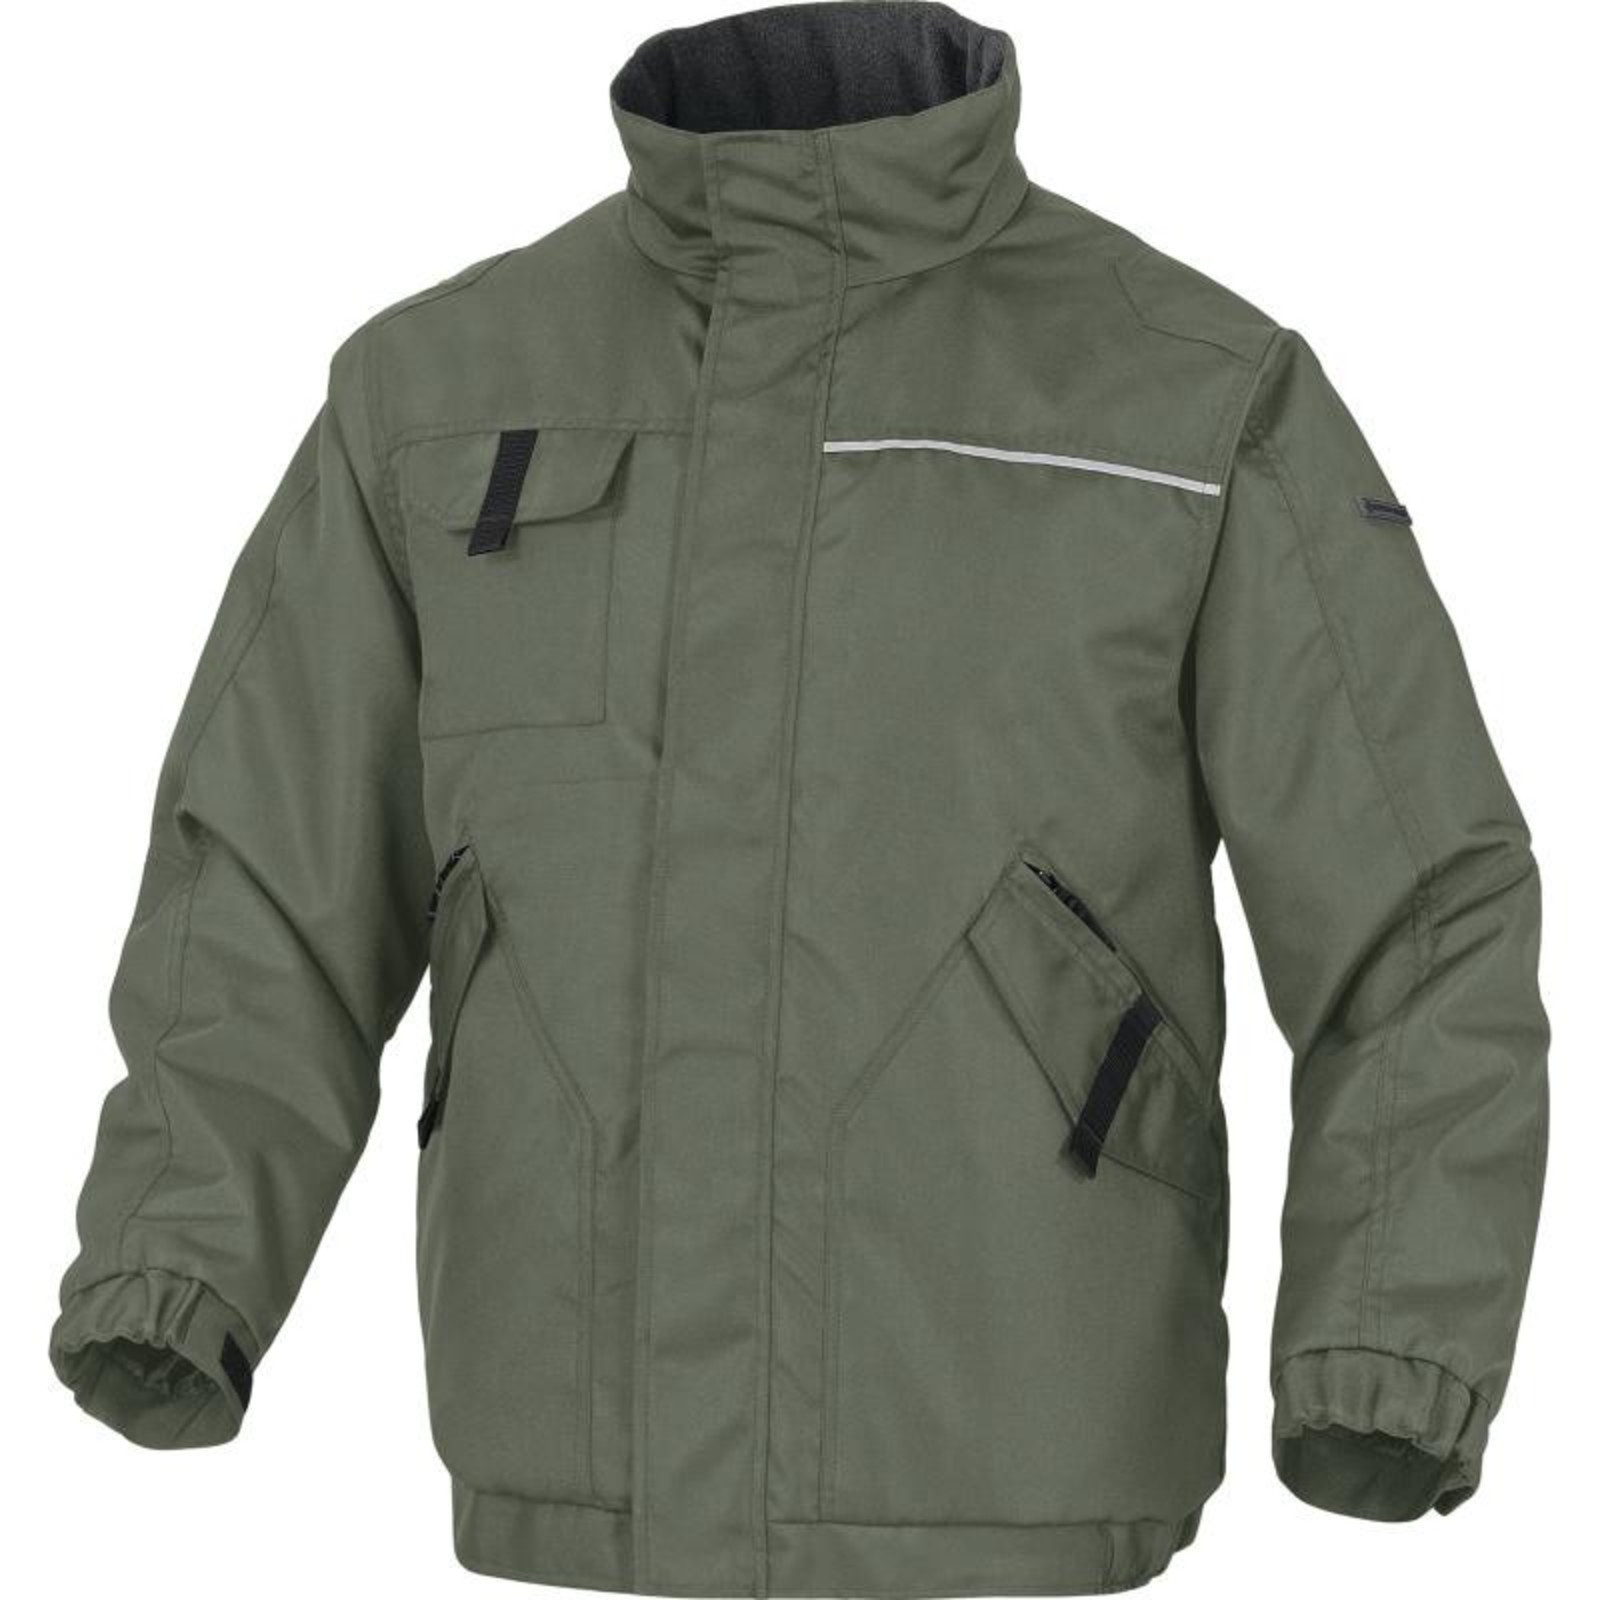 Zimná pracovná bunda Delta Plus Northwood2 - veľkosť: L, farba: zelená/čierna